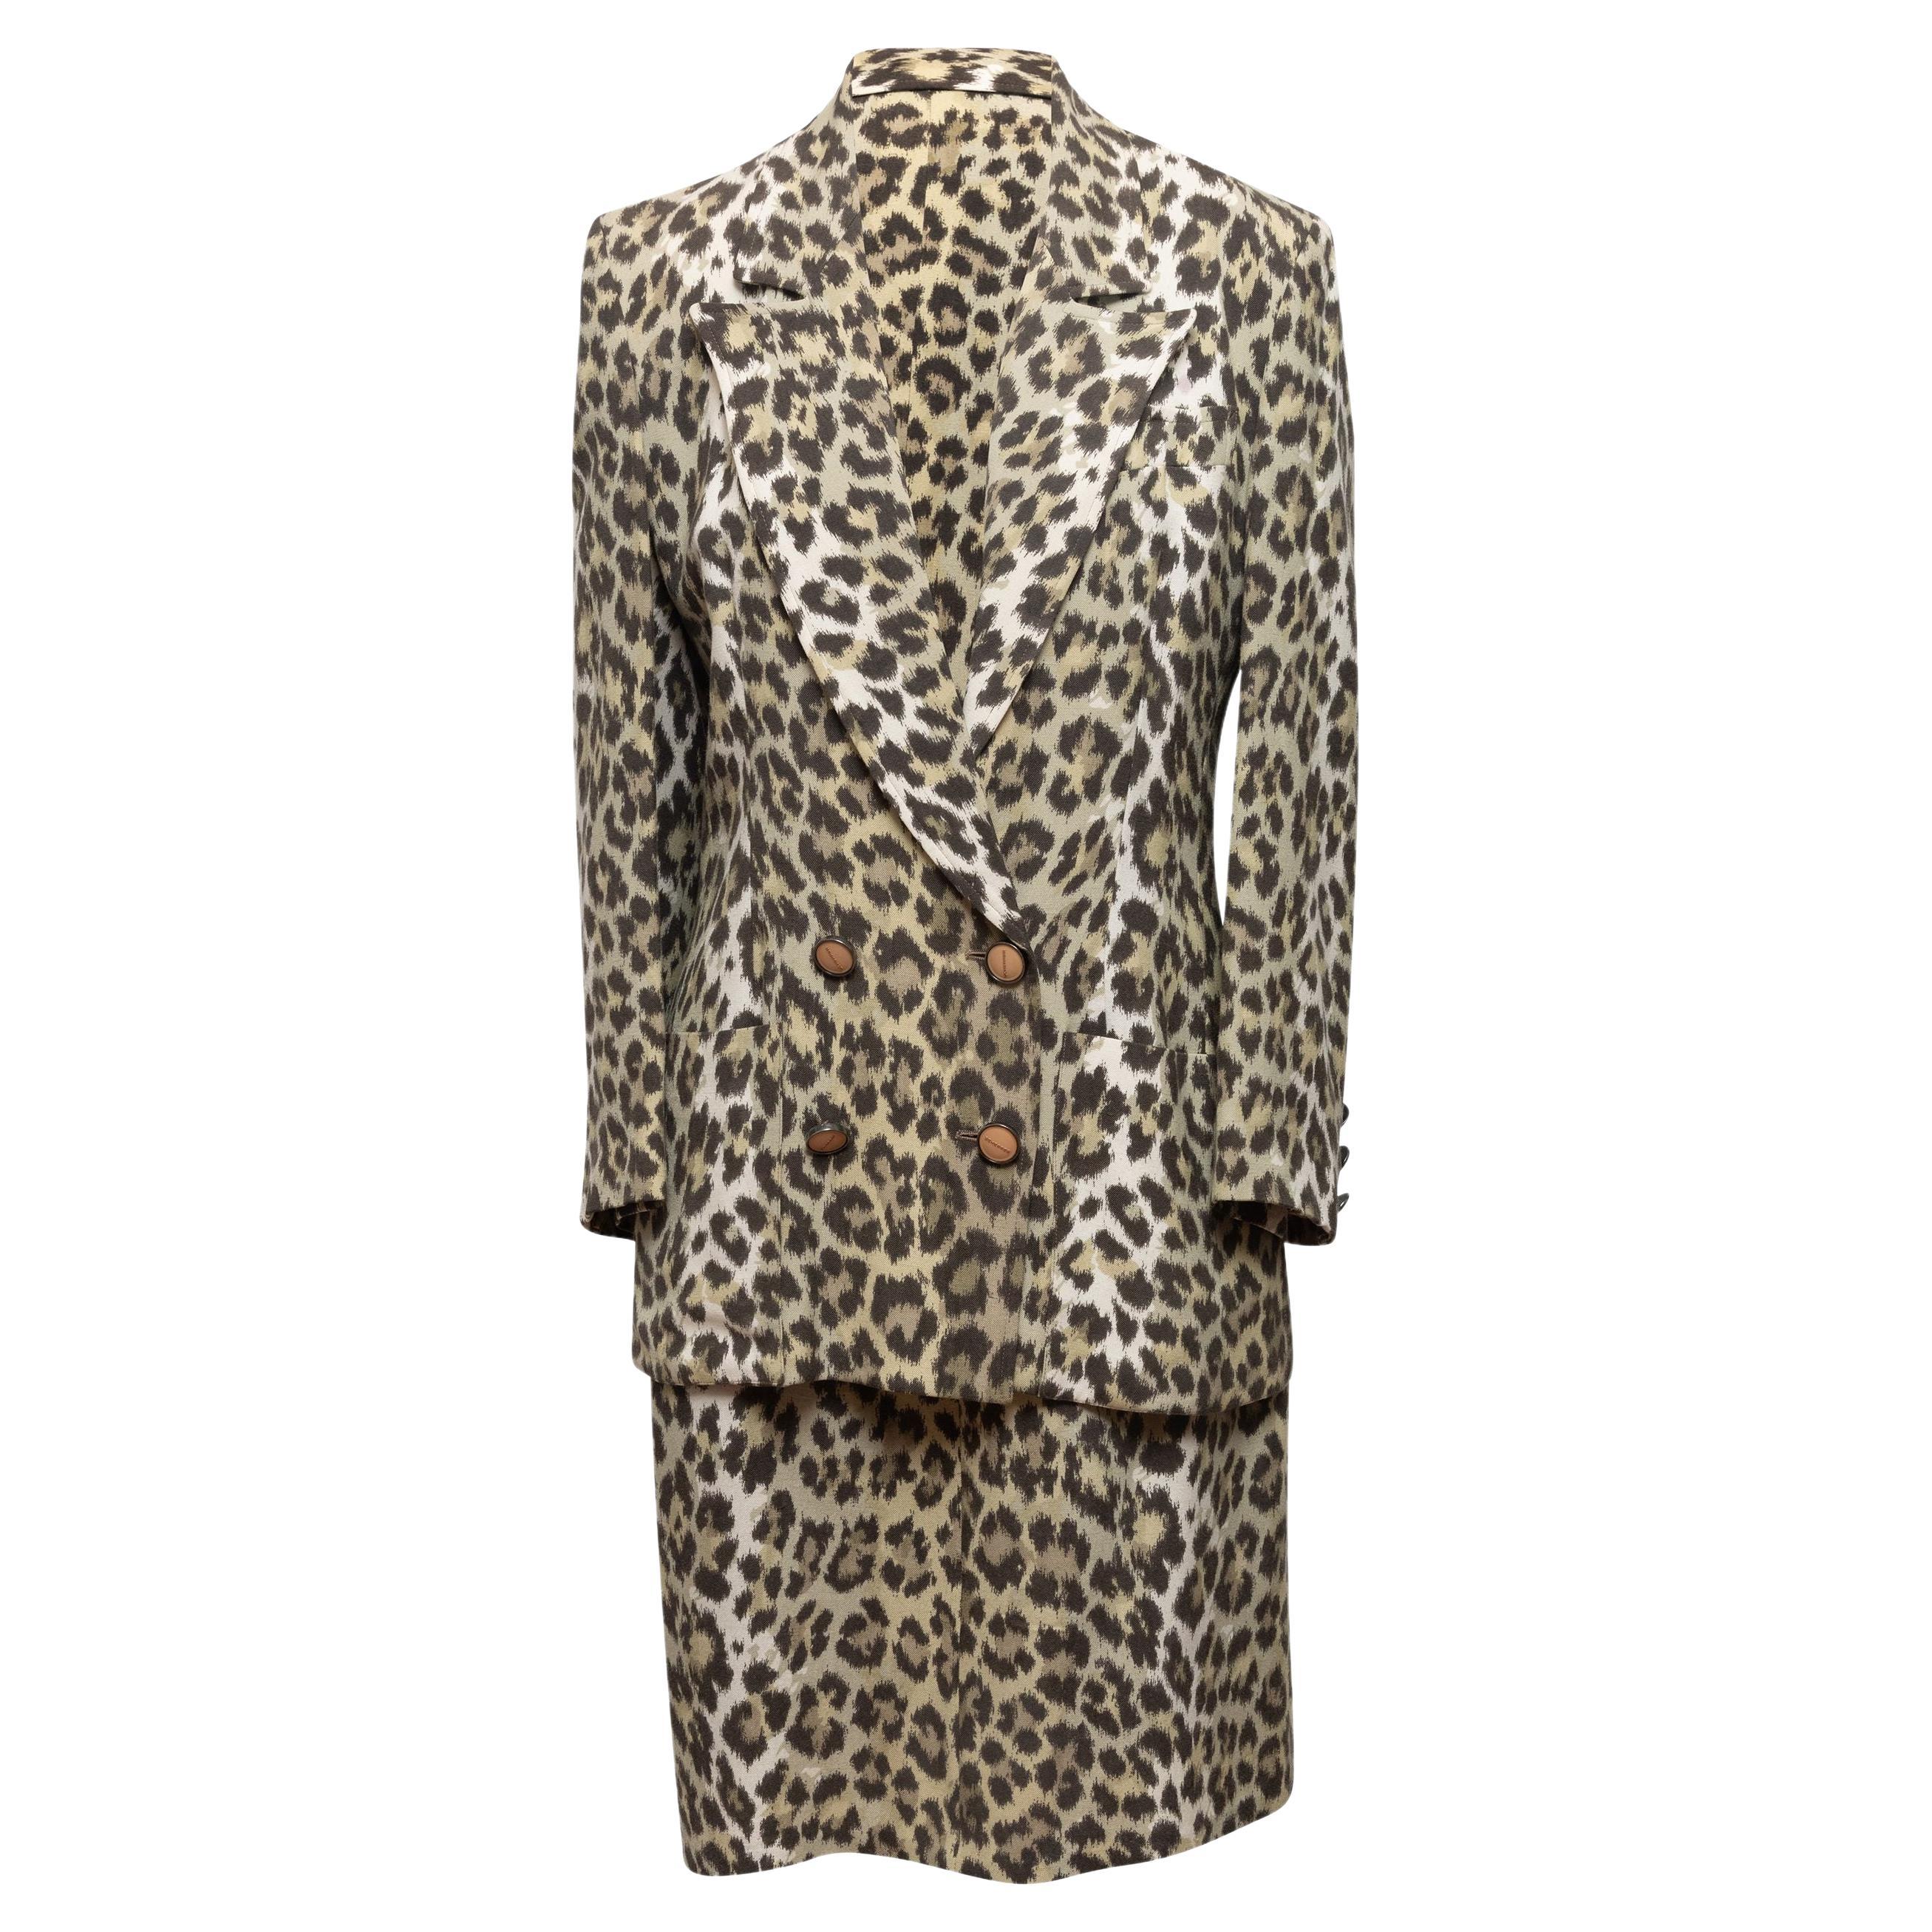 Jean Louis Scherrer Tan & Black Leopard Print Skirt Suit